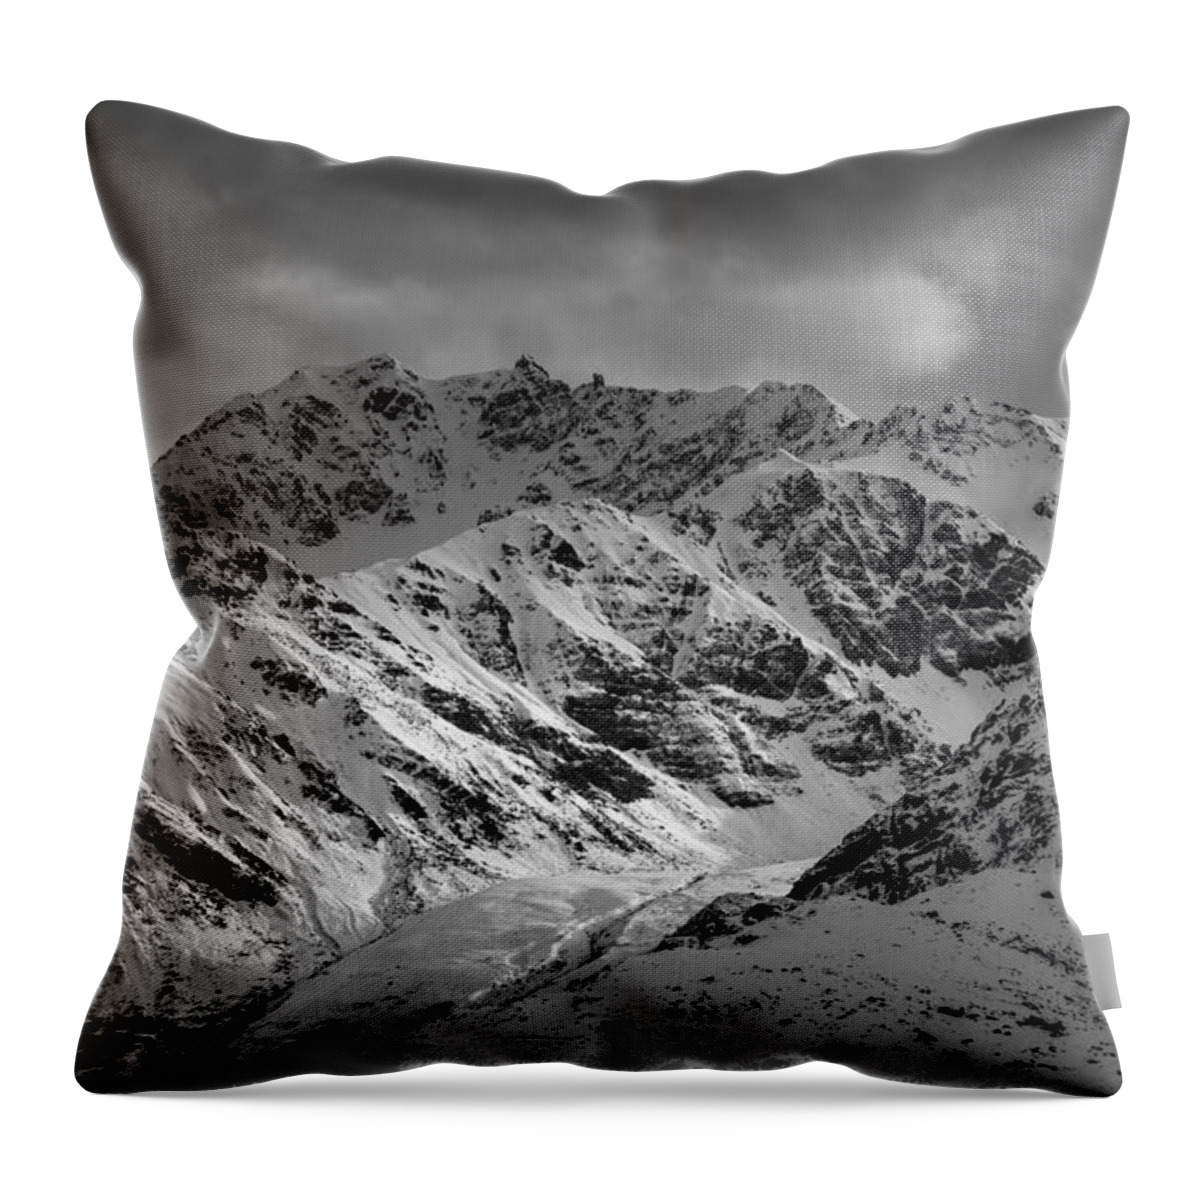 Alaska Throw Pillow featuring the photograph Talkeetna Mountains, Alaska by Scott Slone